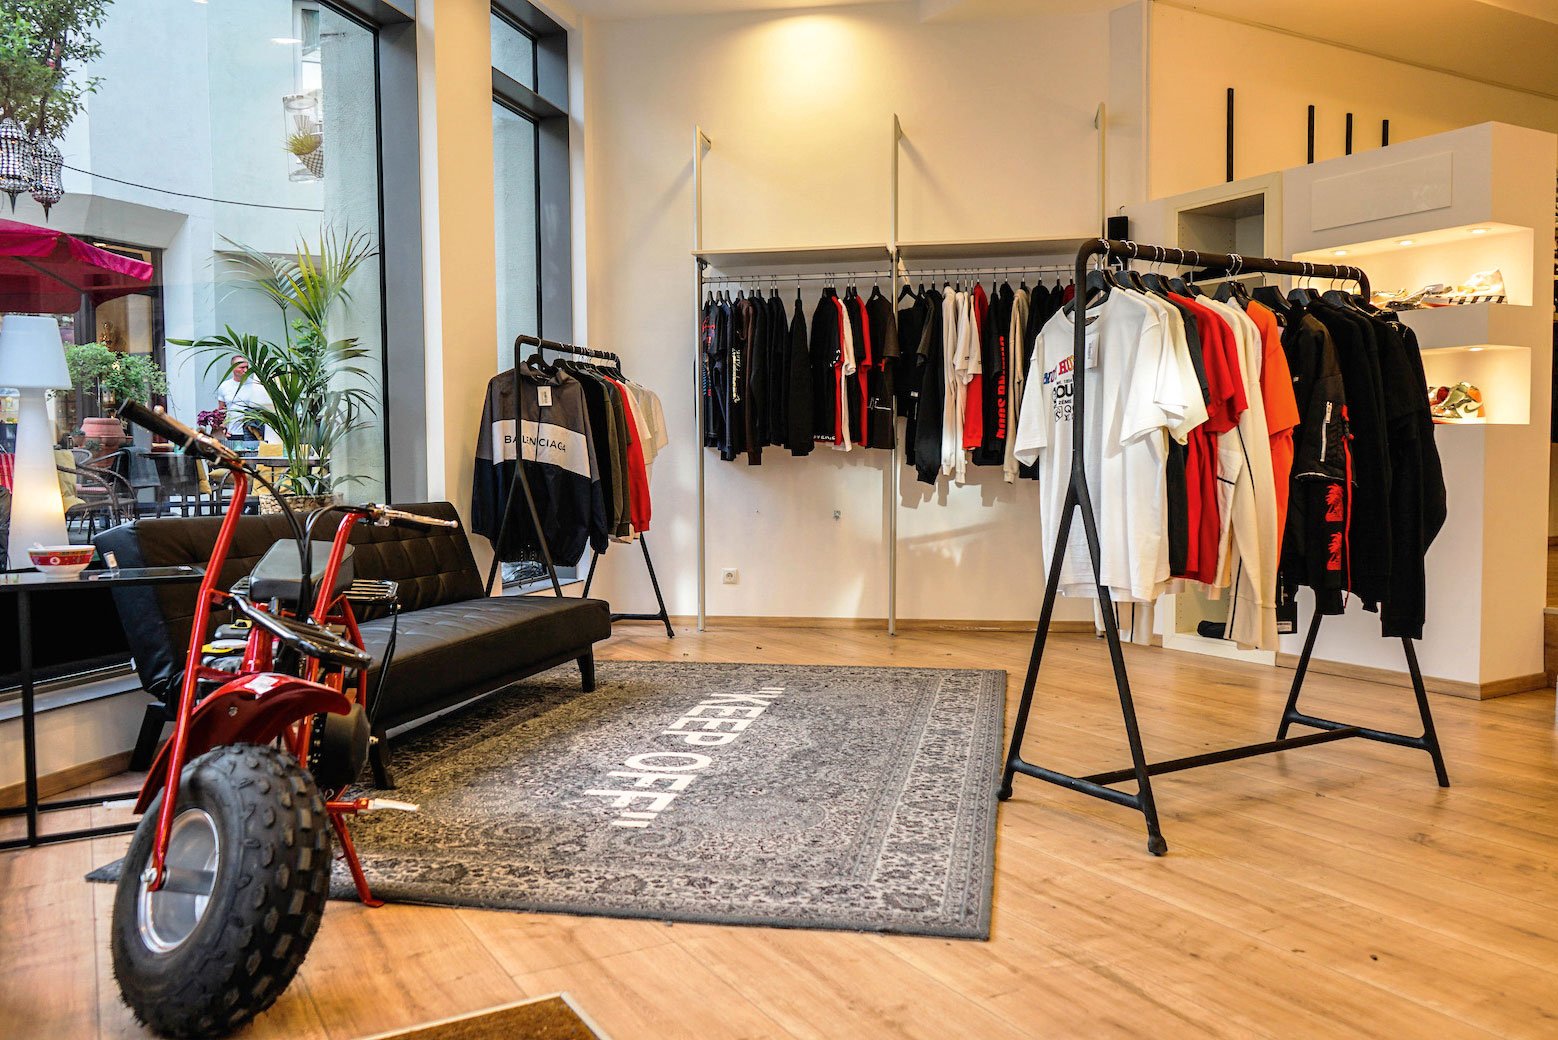 Shop statt Instagram: 700 Euro können die gebrauchten Sneakers bei Hypeneedz schon kosten – Sammlerstücke halt. In Wien bezieht der Mode-Secondhand-Laden Geschäftsflächen in der Innenstadt. hypeneedz.com